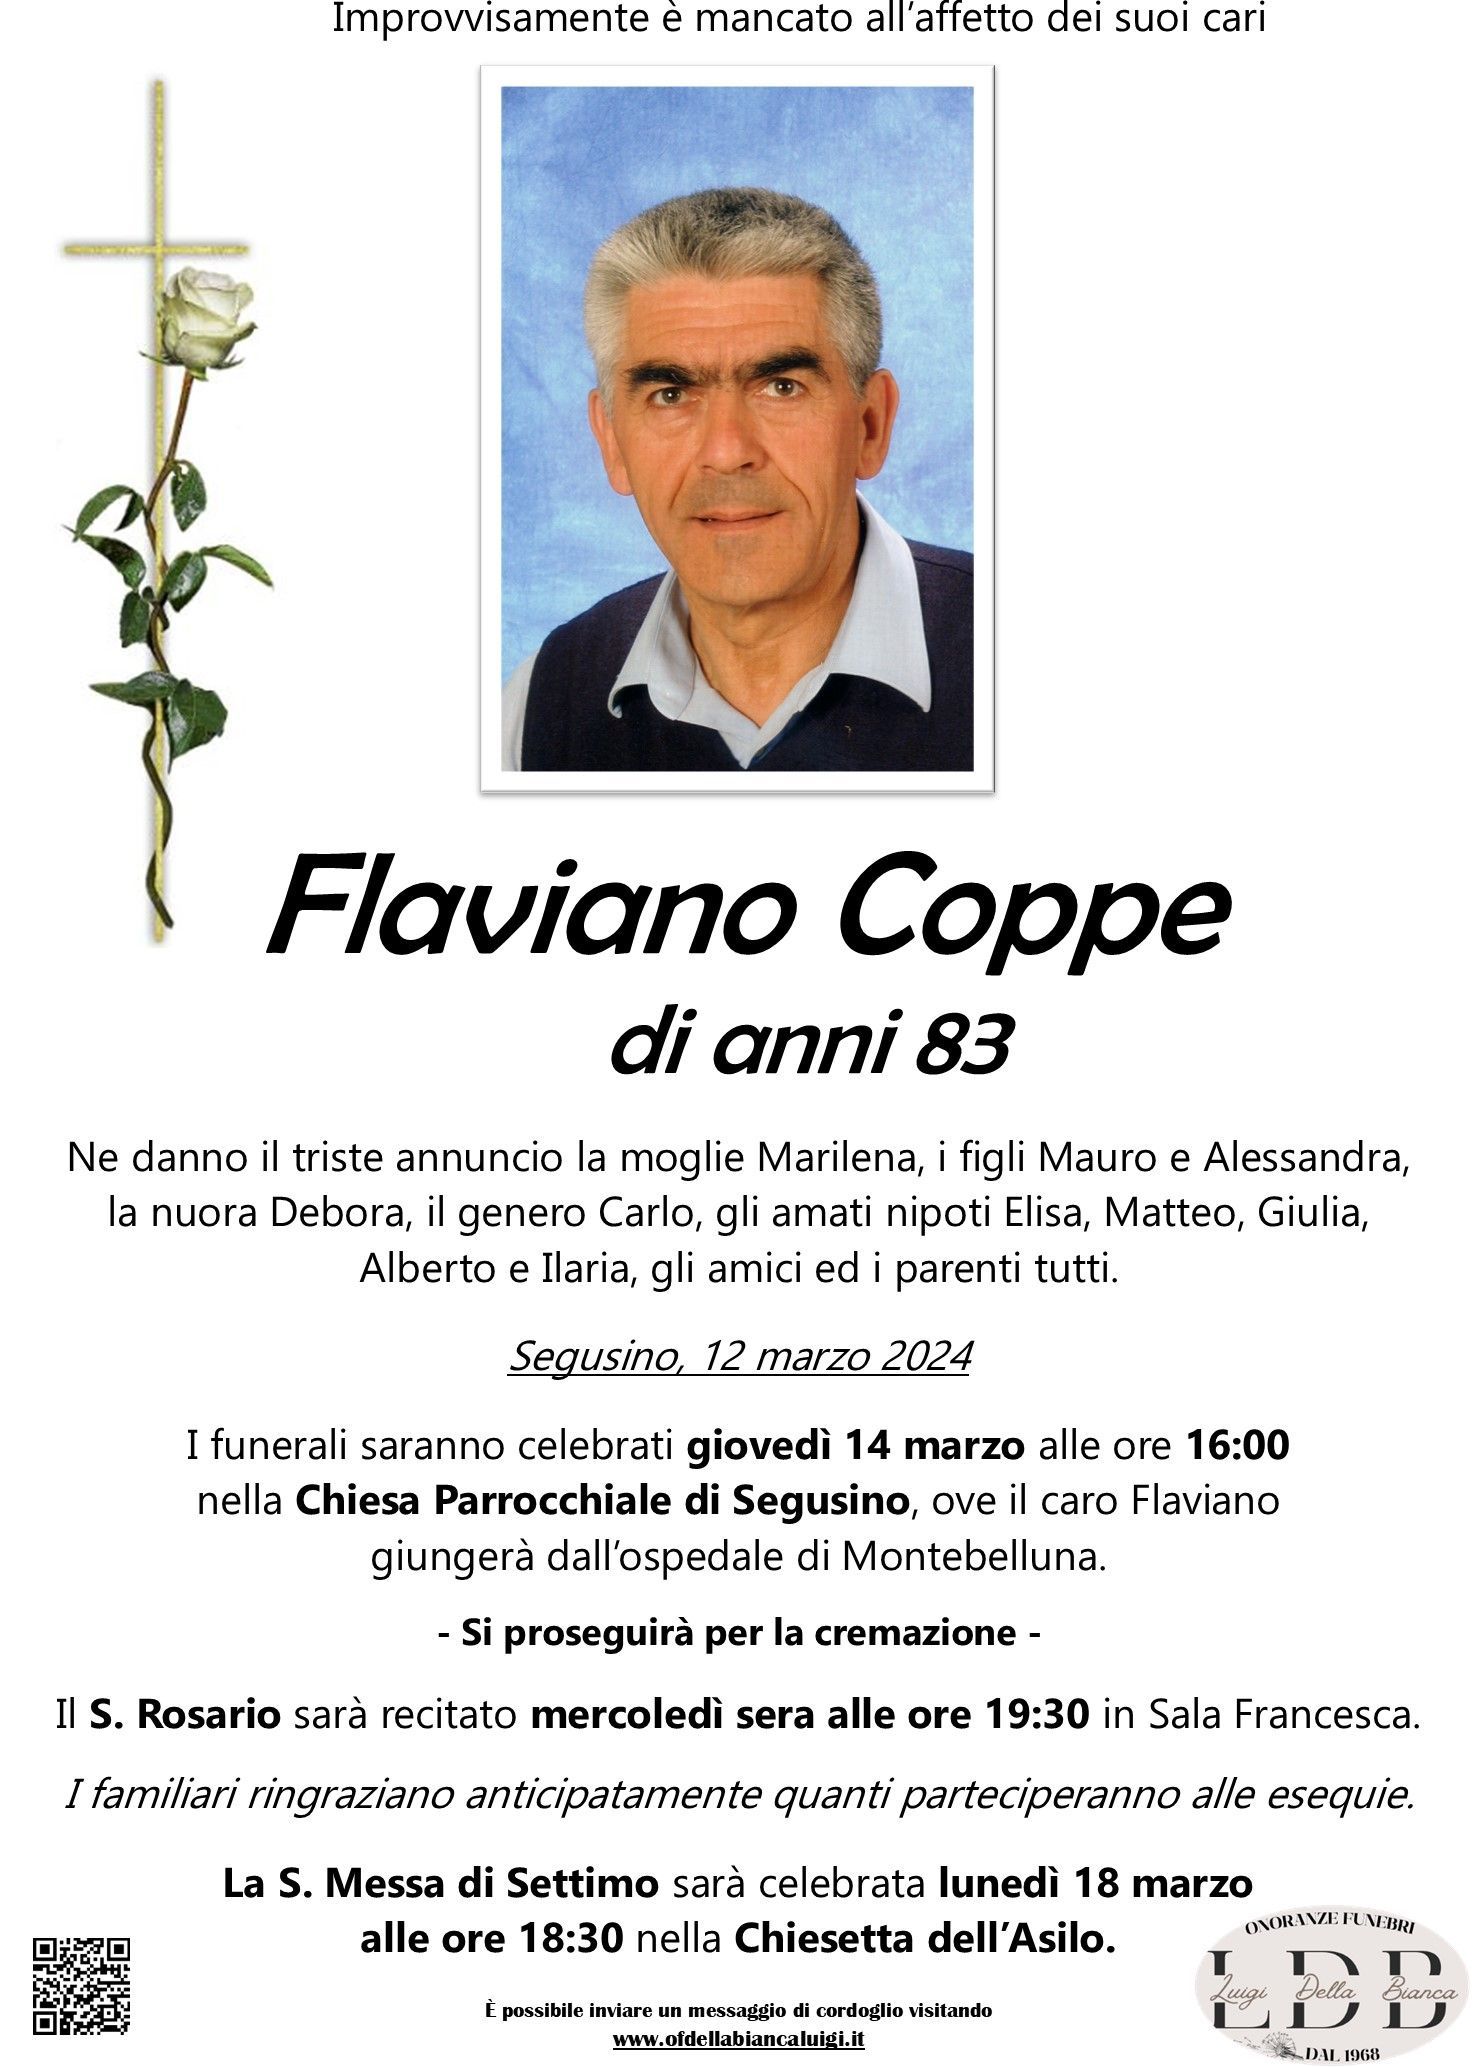 Coppe Flaviano